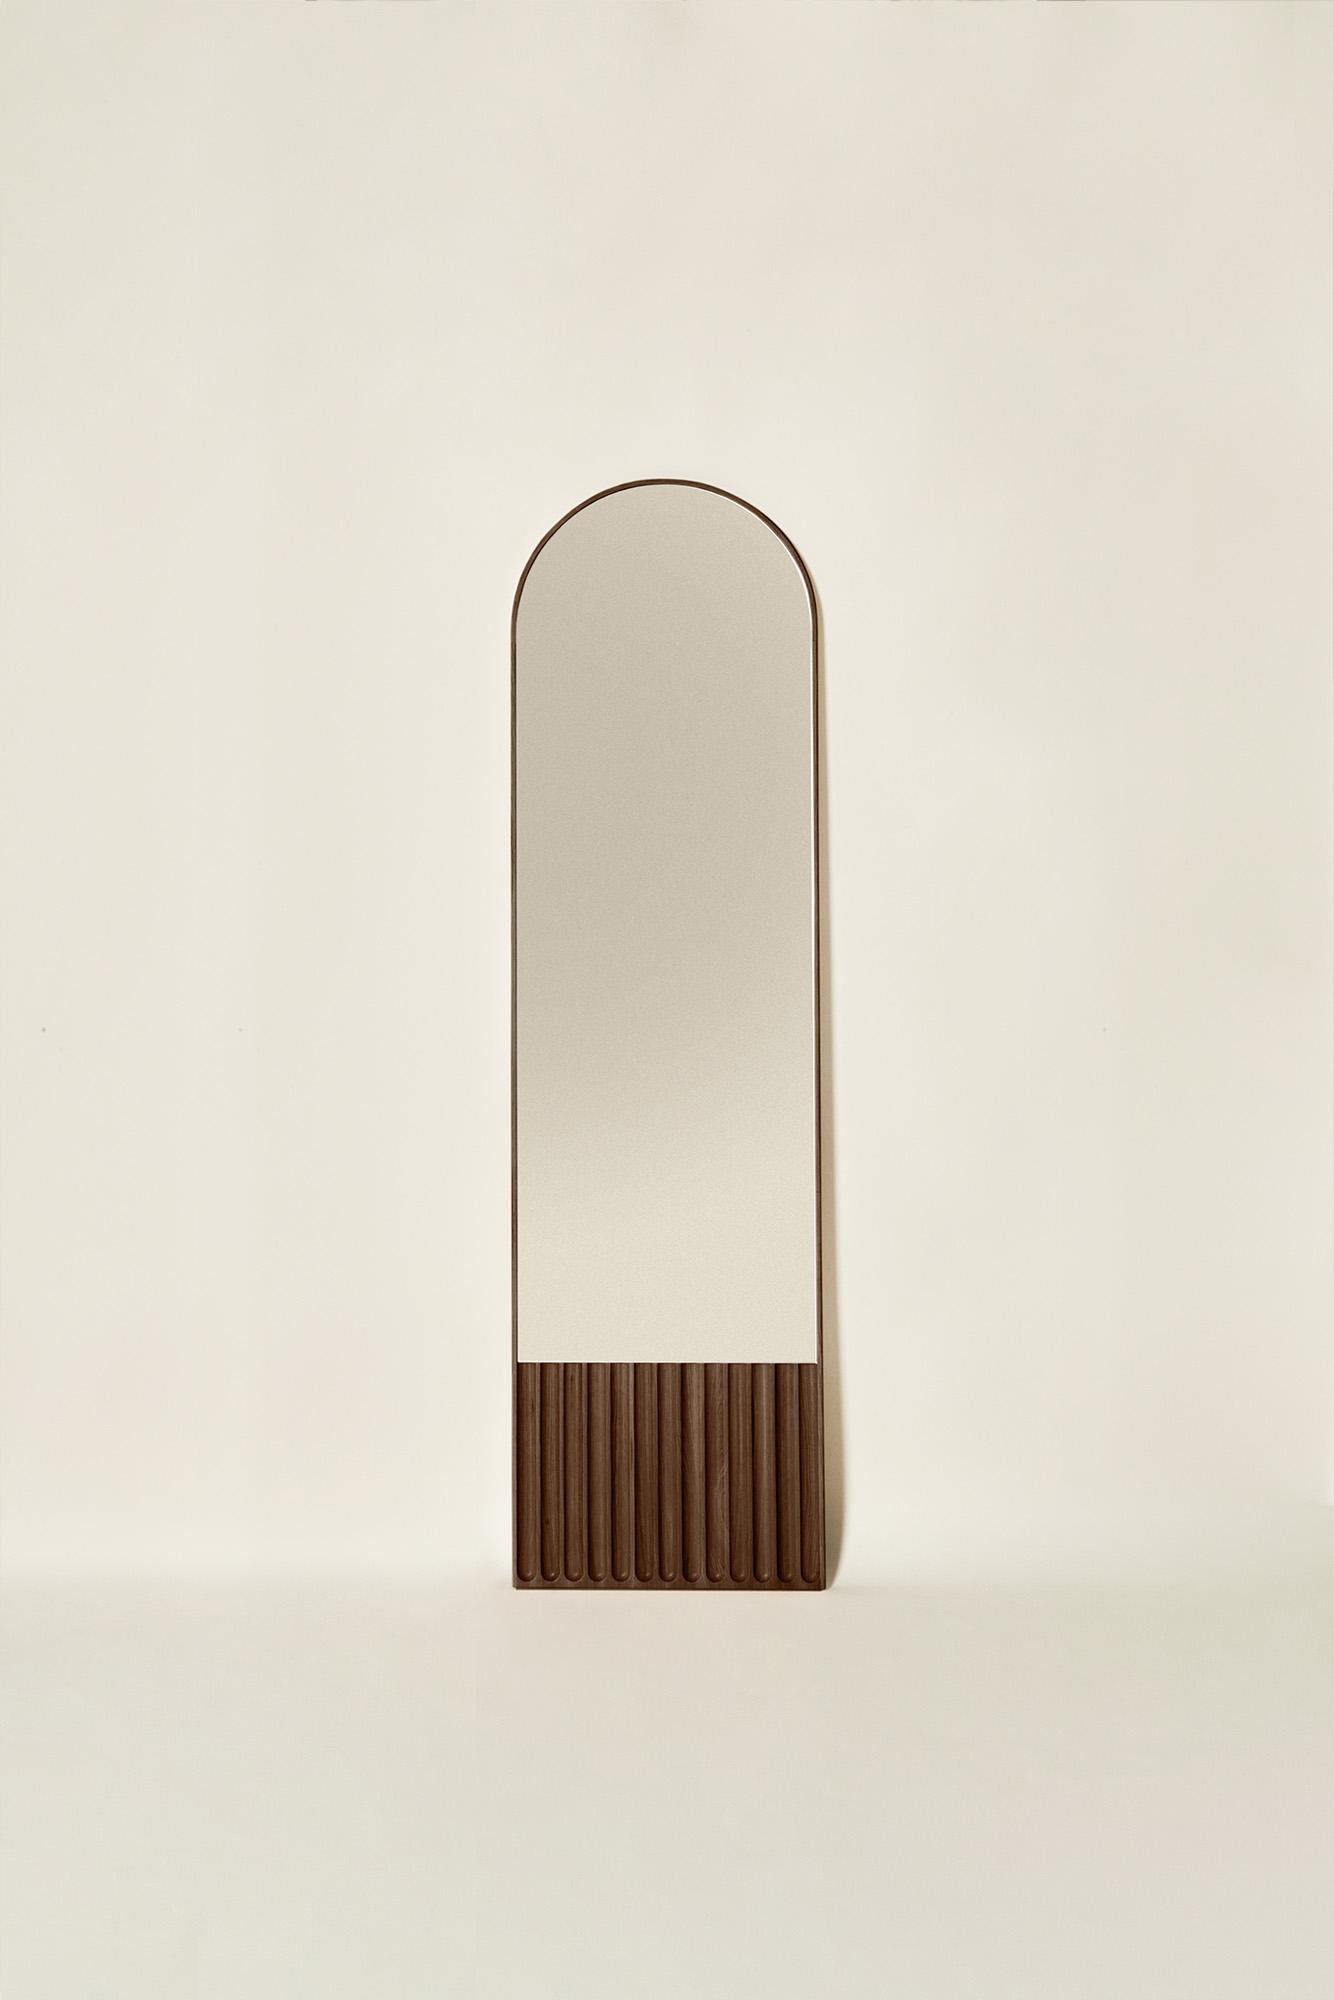 Tutto Sesto Solid Wood Oval Mirror, Ash in Brown Finish, Contemporary In New Condition For Sale In Cadeglioppi de Oppeano, VR